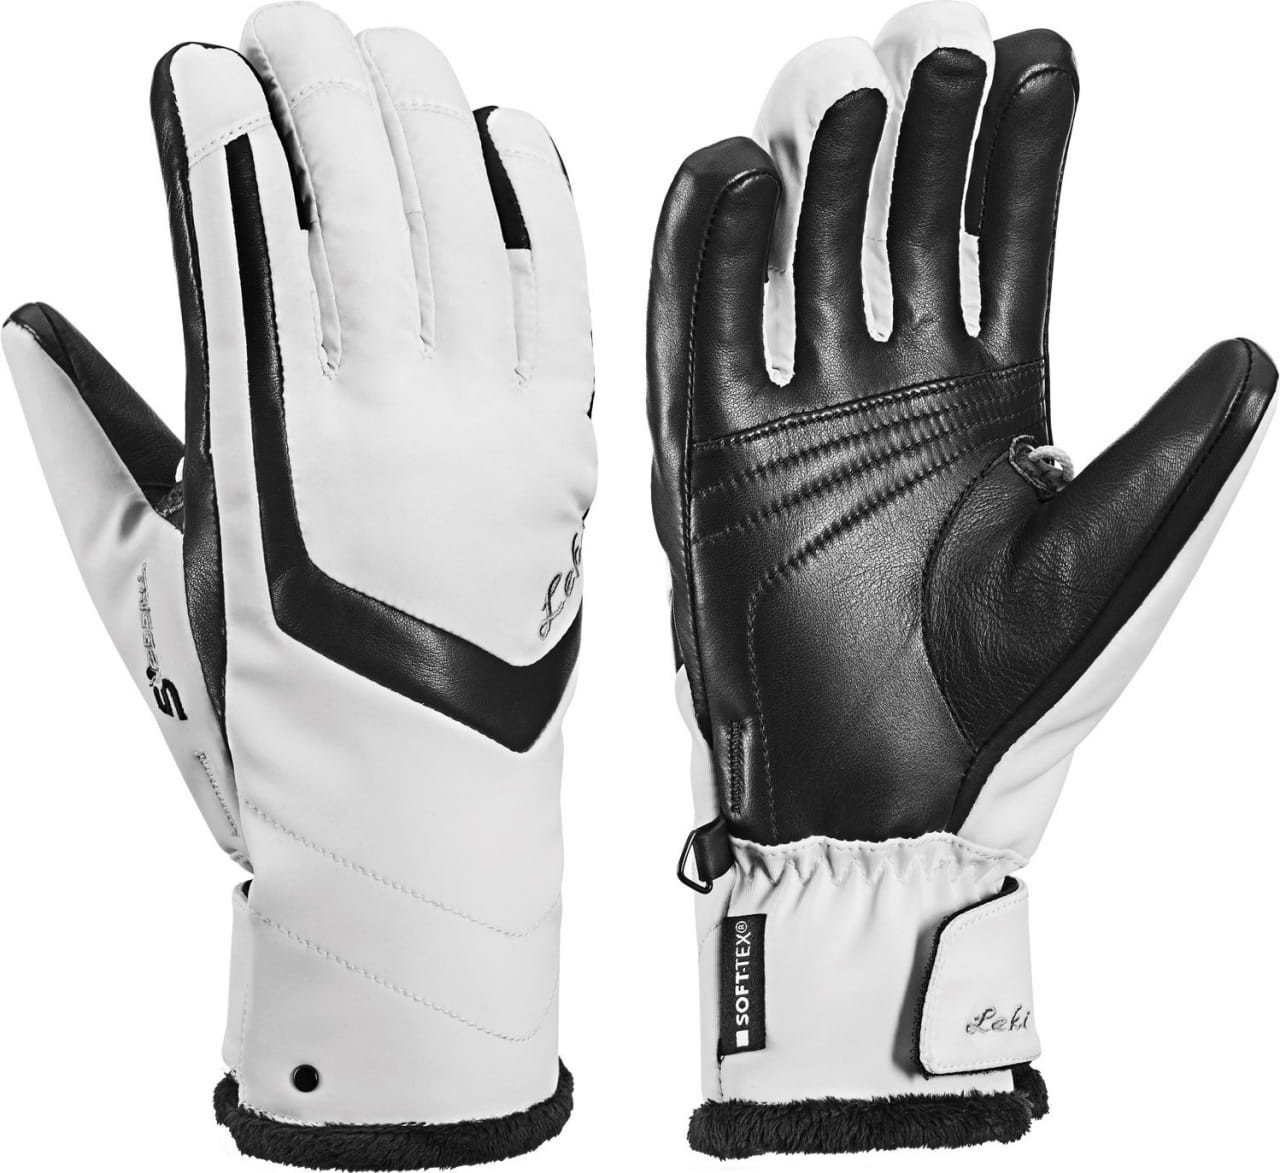 Ski Gloves Leki Stella S White/Black 6,5 Ski Gloves